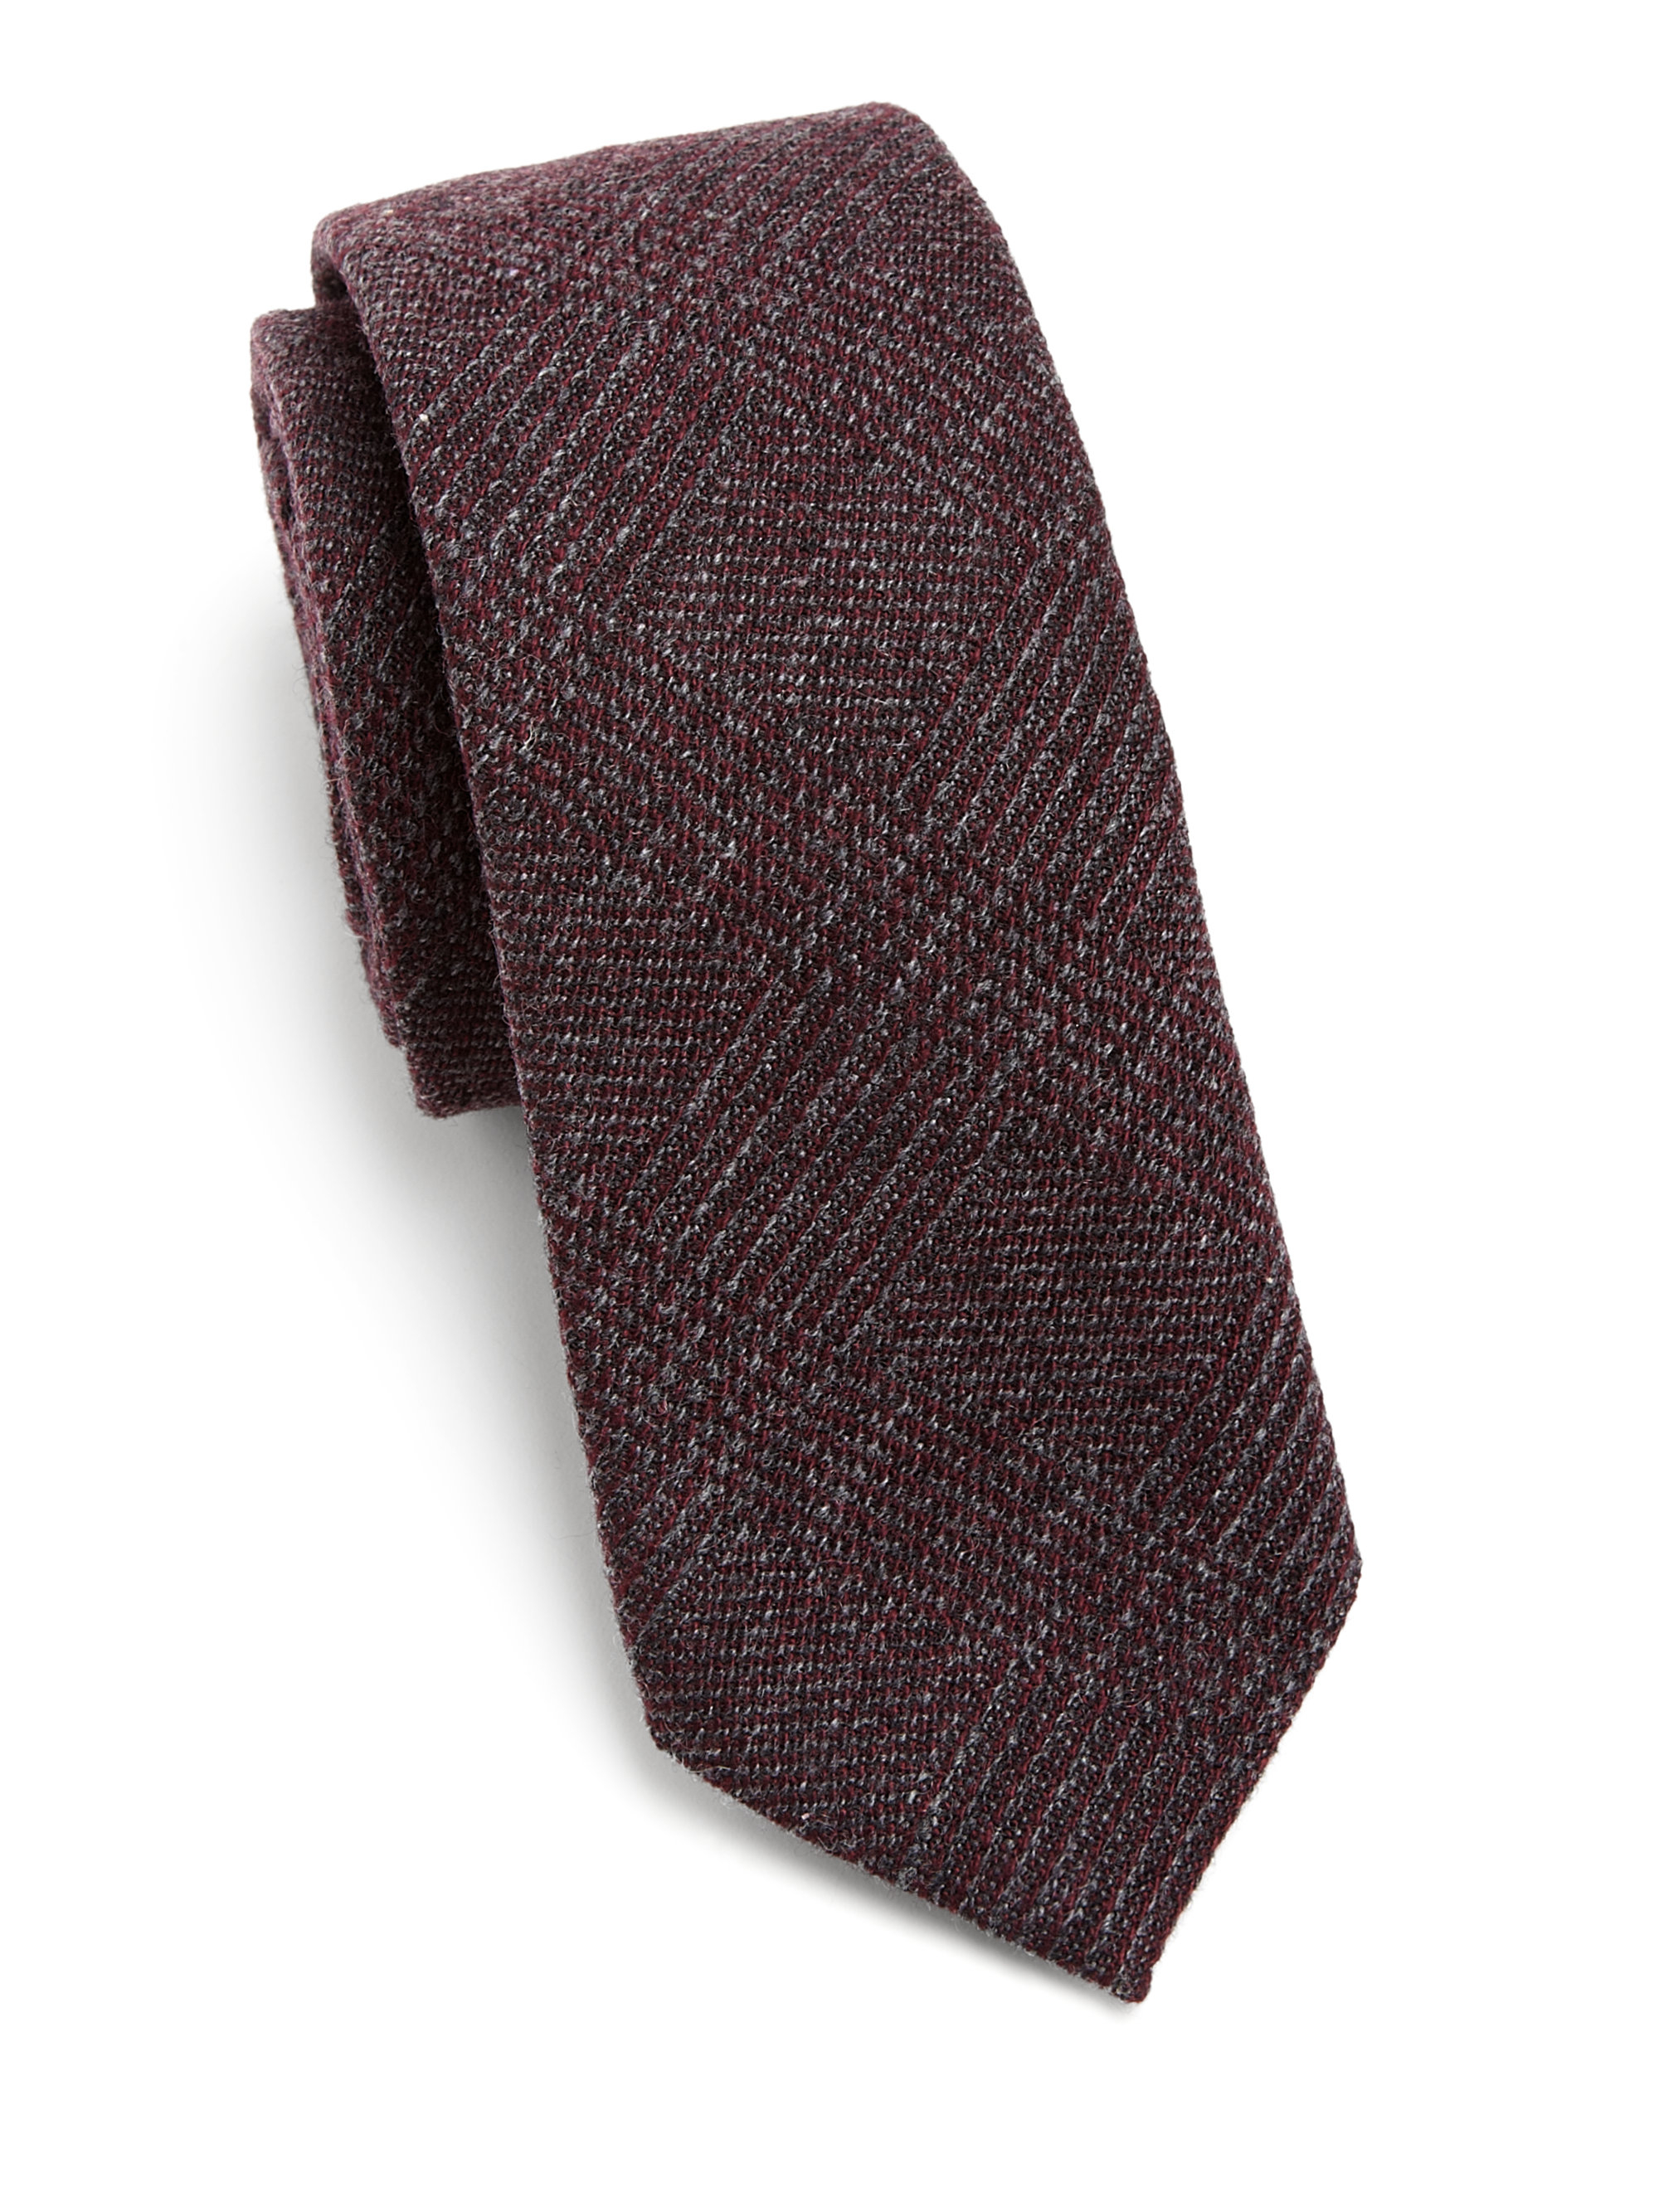 Burberry Rohan Tweed Tie in Plum (Purple) Men -